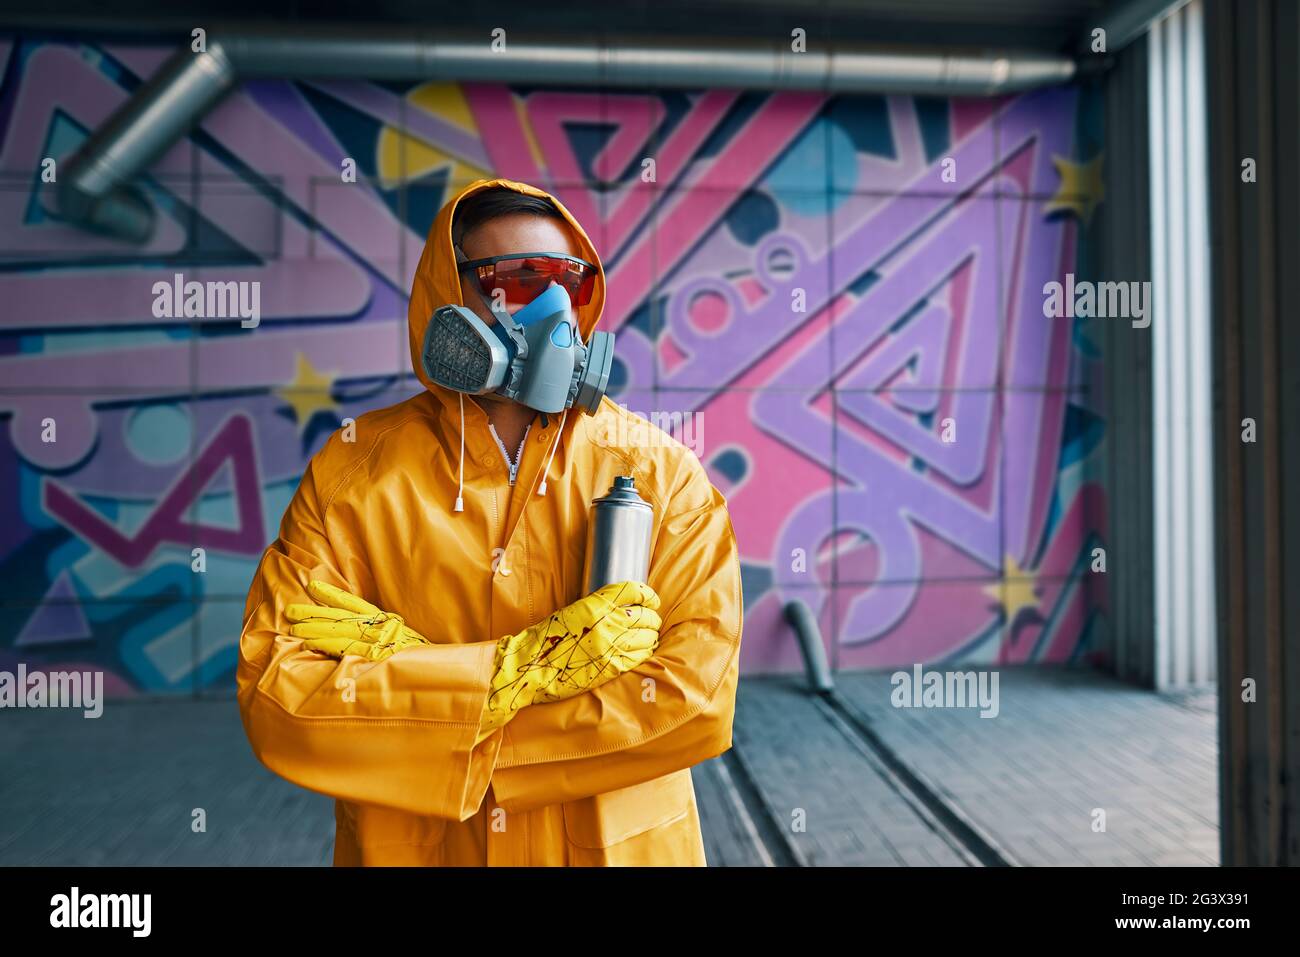 Graffiti-Maler in Atemschutzmaske, der mit seinen Bildern in der Nähe der  Wand steht Stockfotografie - Alamy